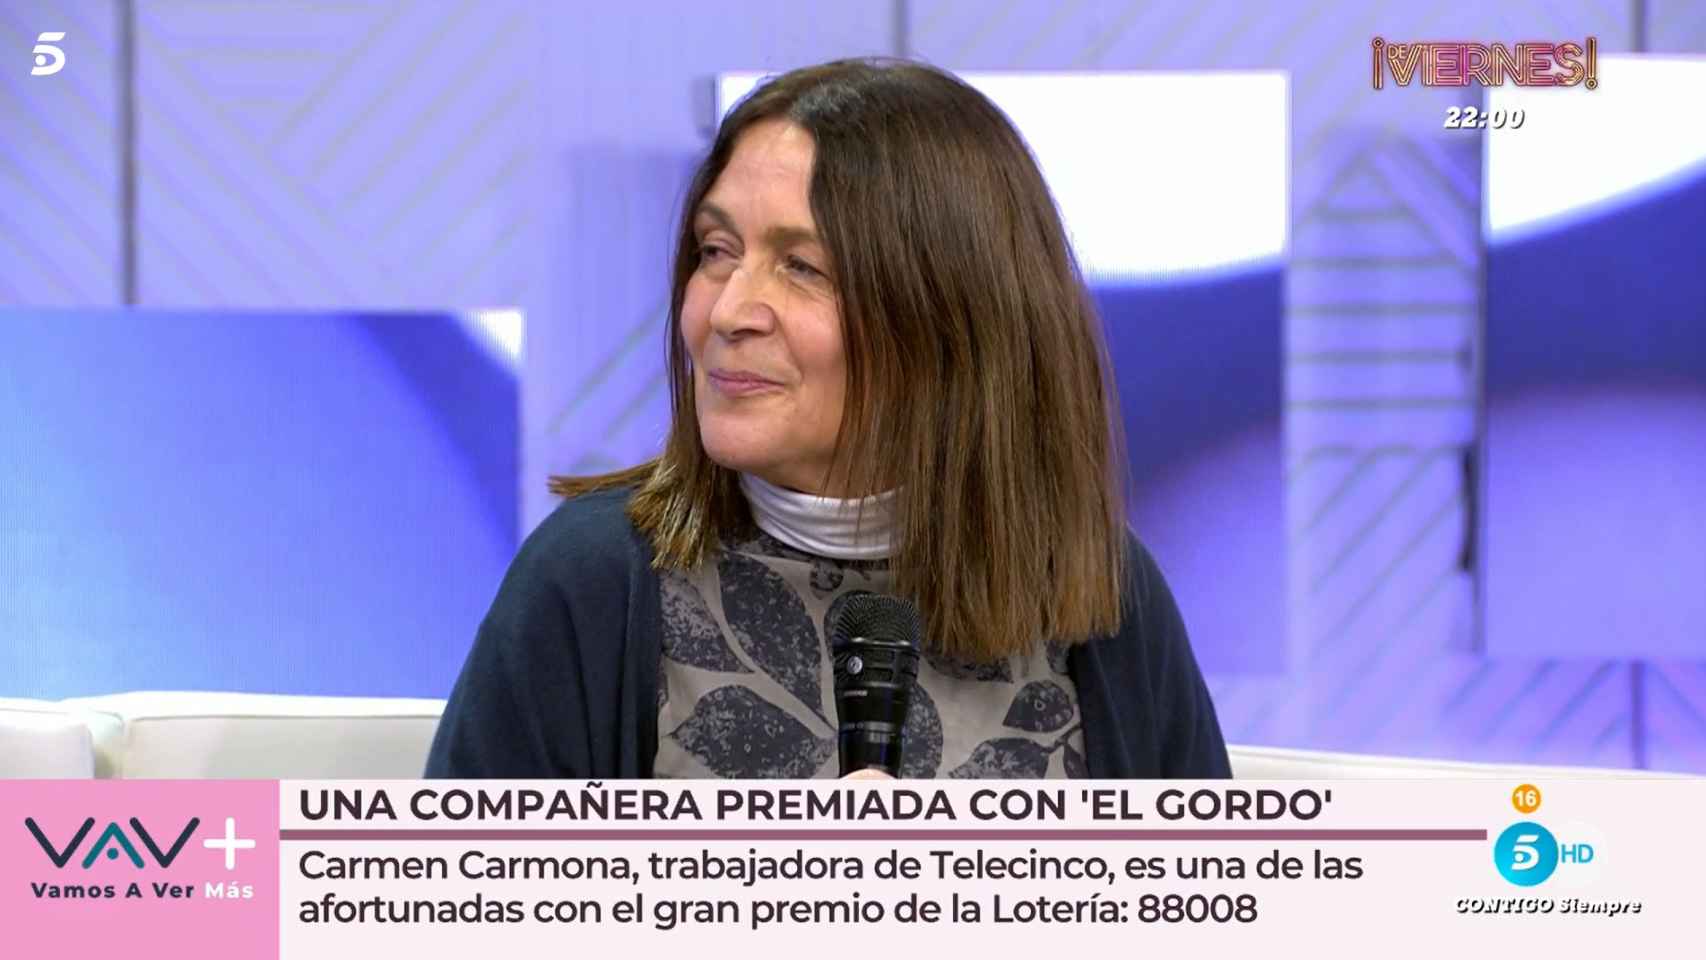 Carmen Carmona, la trabajadora de Telecinco que ha ganado el Gordo, en 'Vamos a ver'.